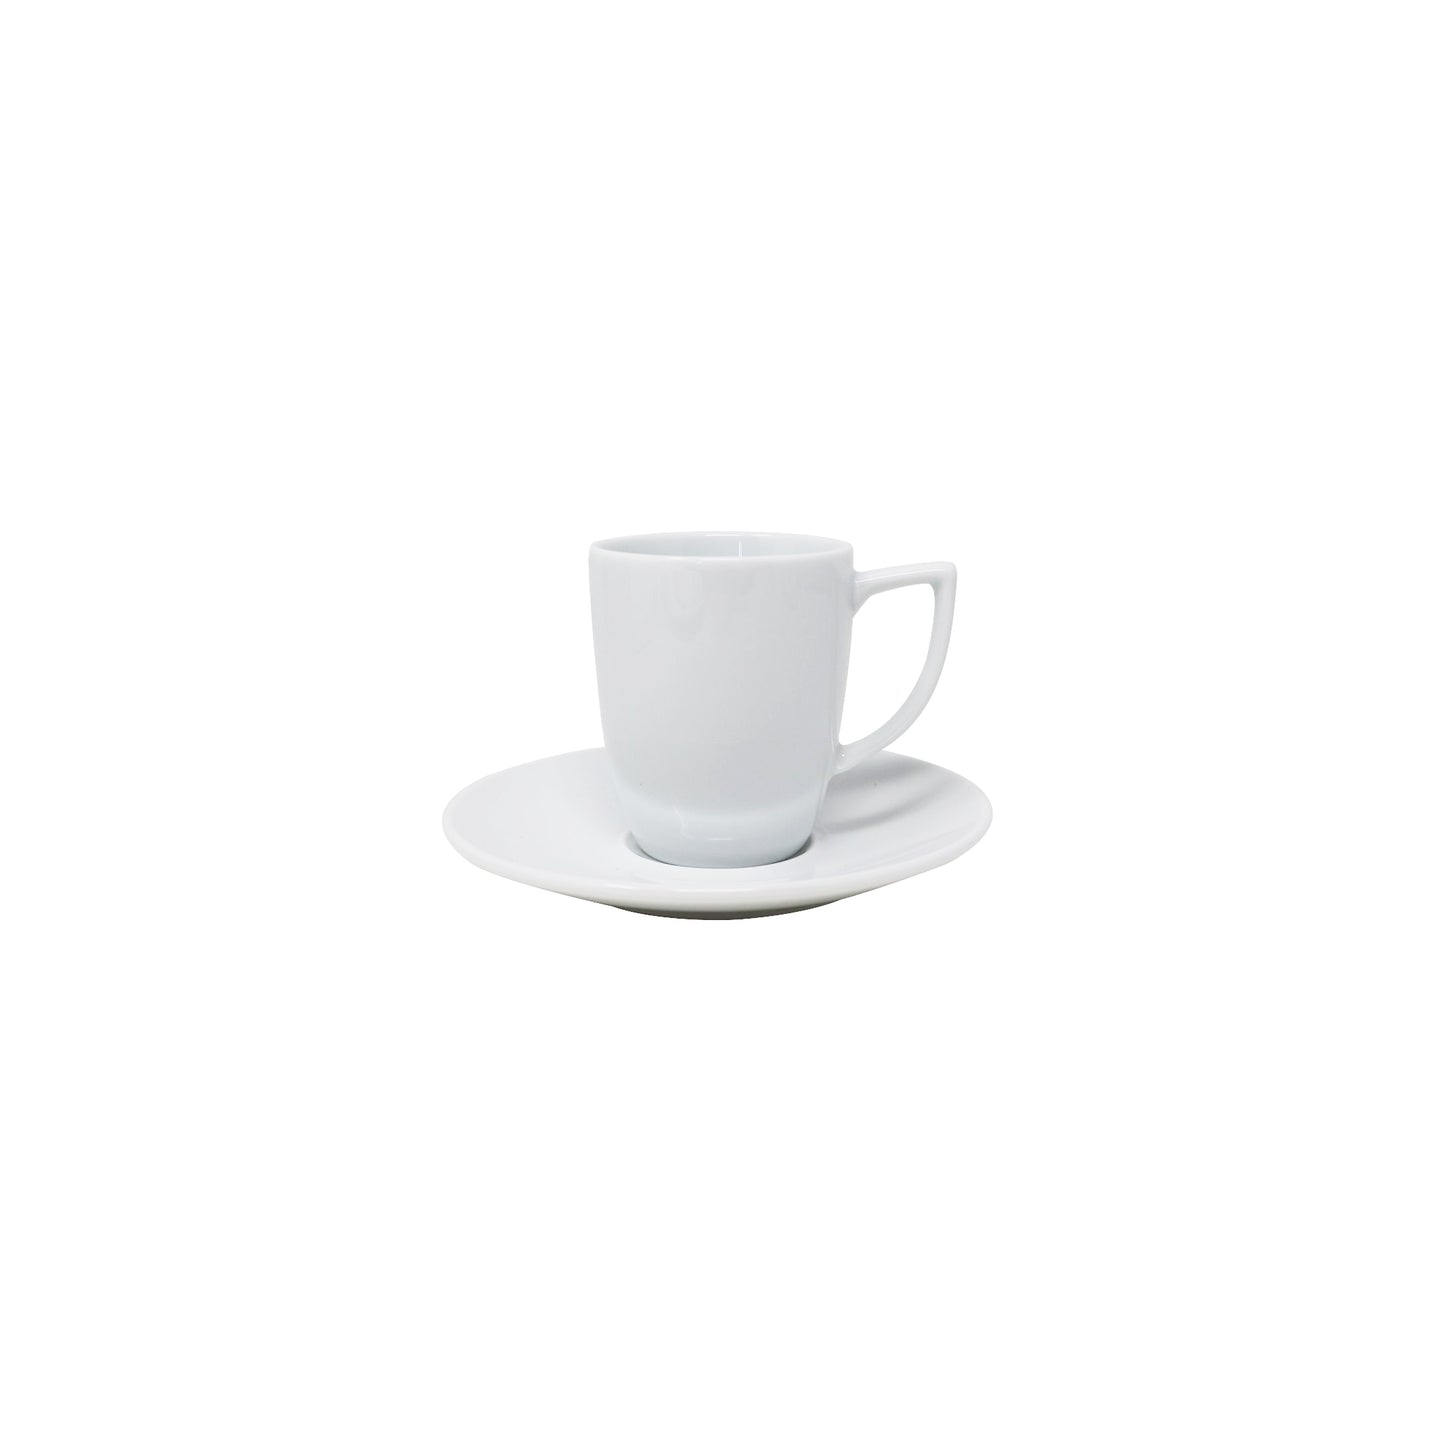 Noritake Lifestyle White Espresso Cup